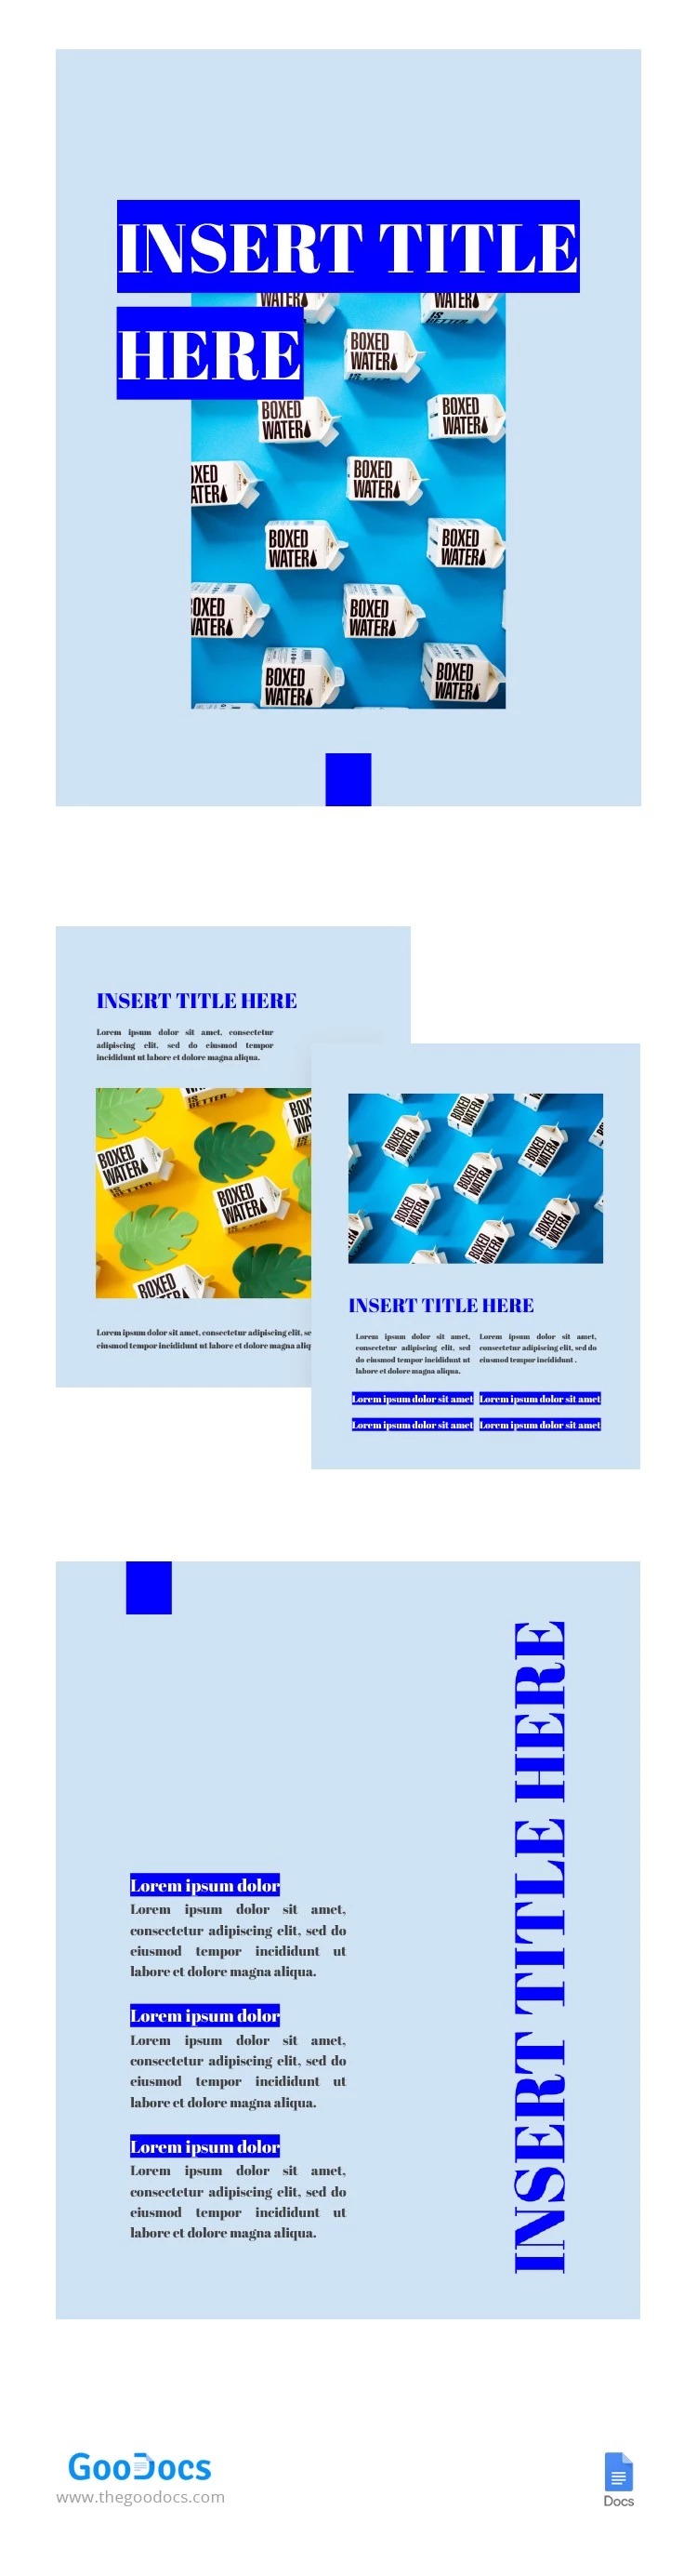 Livro Azul - free Google Docs Template - 10062418